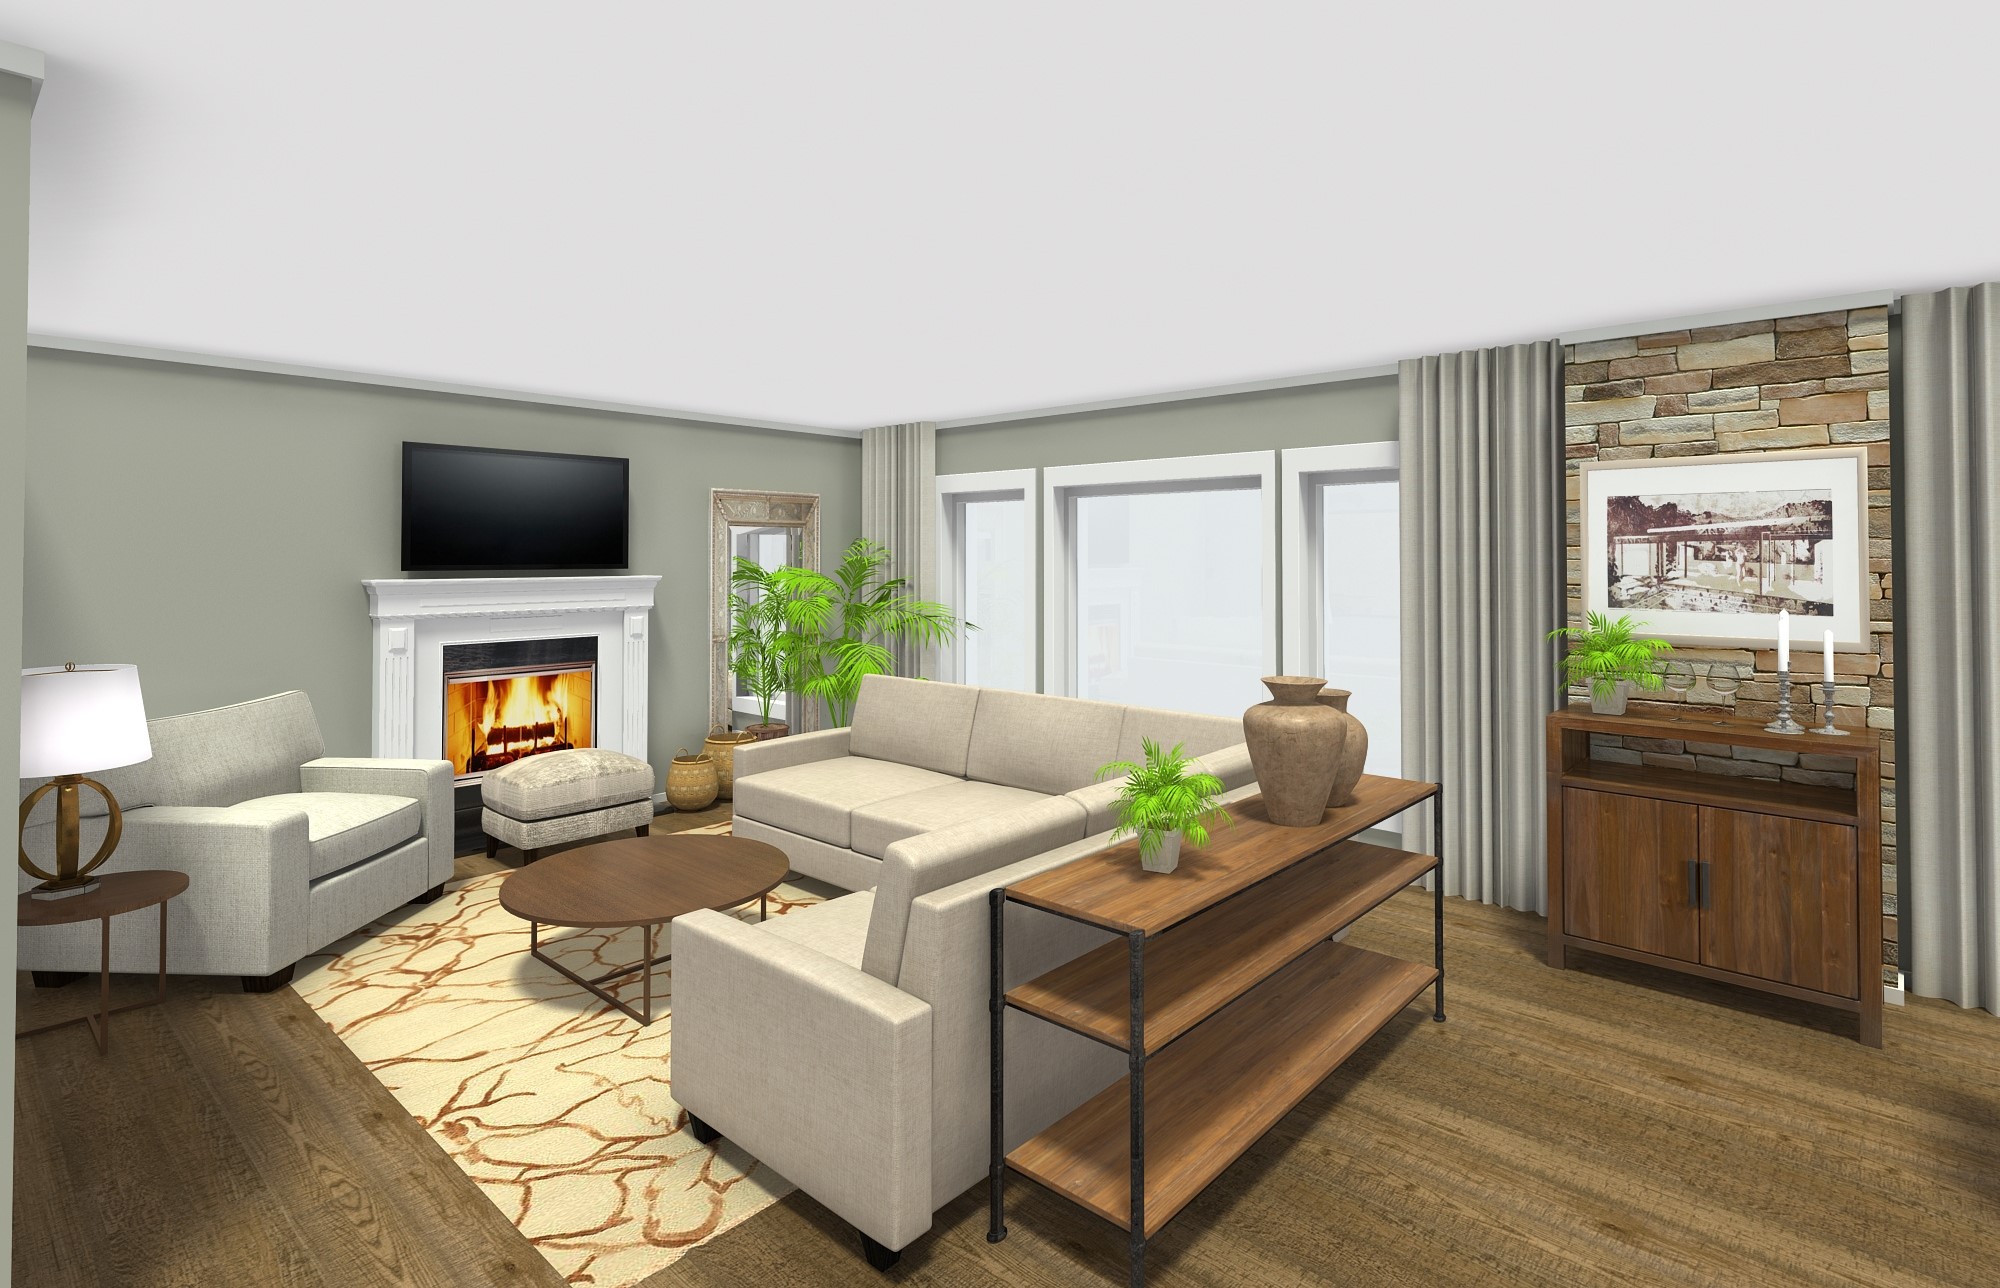 Furniture plan & layout for living room design